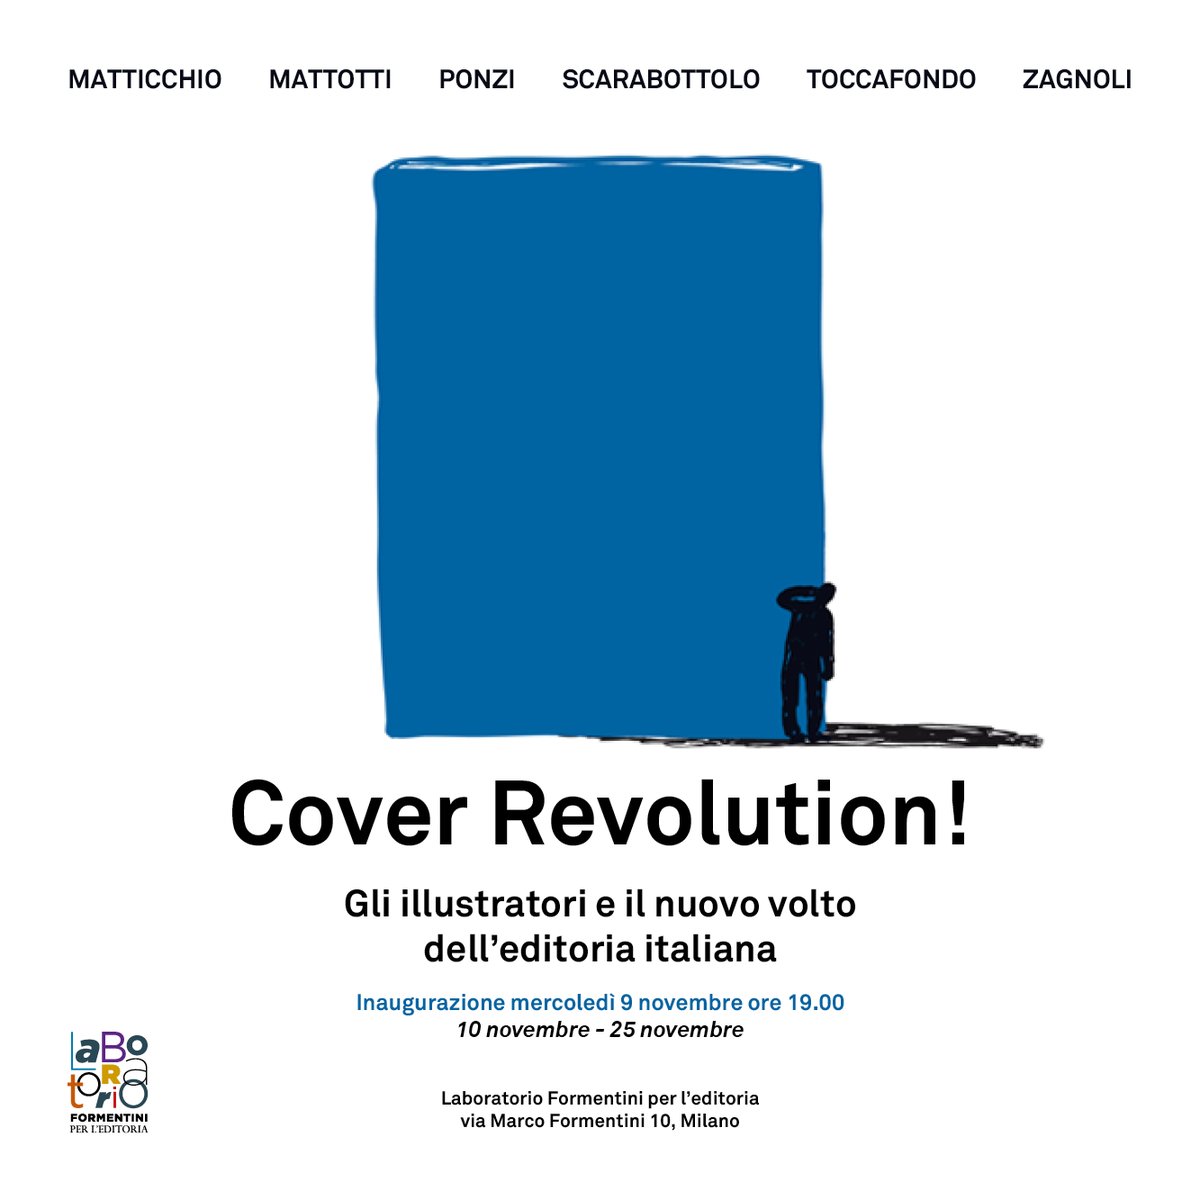 “Cover Revolution!”, le copertine dei libri in mostra a Milano